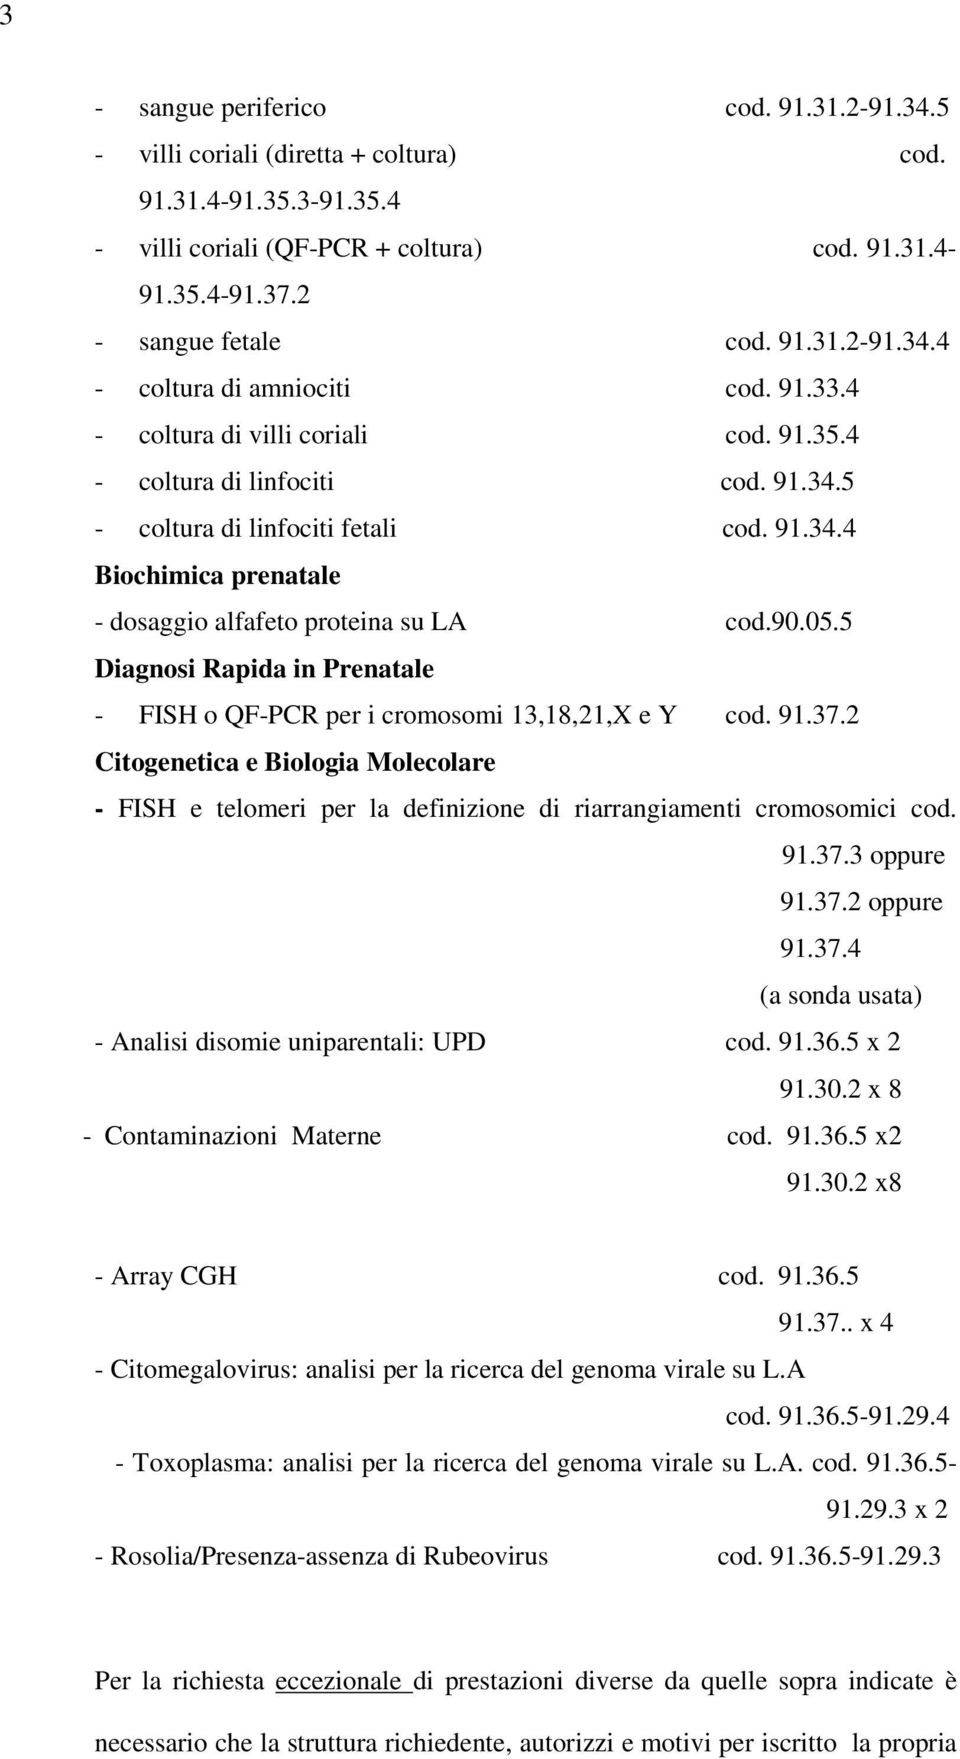 5 Diagnosi Rapida in Prenatale - FISH o QF-PCR per i cromosomi 13,18,21,X e Y cod. 91.37.2 Citogenetica e Biologia Molecolare - FISH e telomeri per la definizione di riarrangiamenti cromosomici cod.